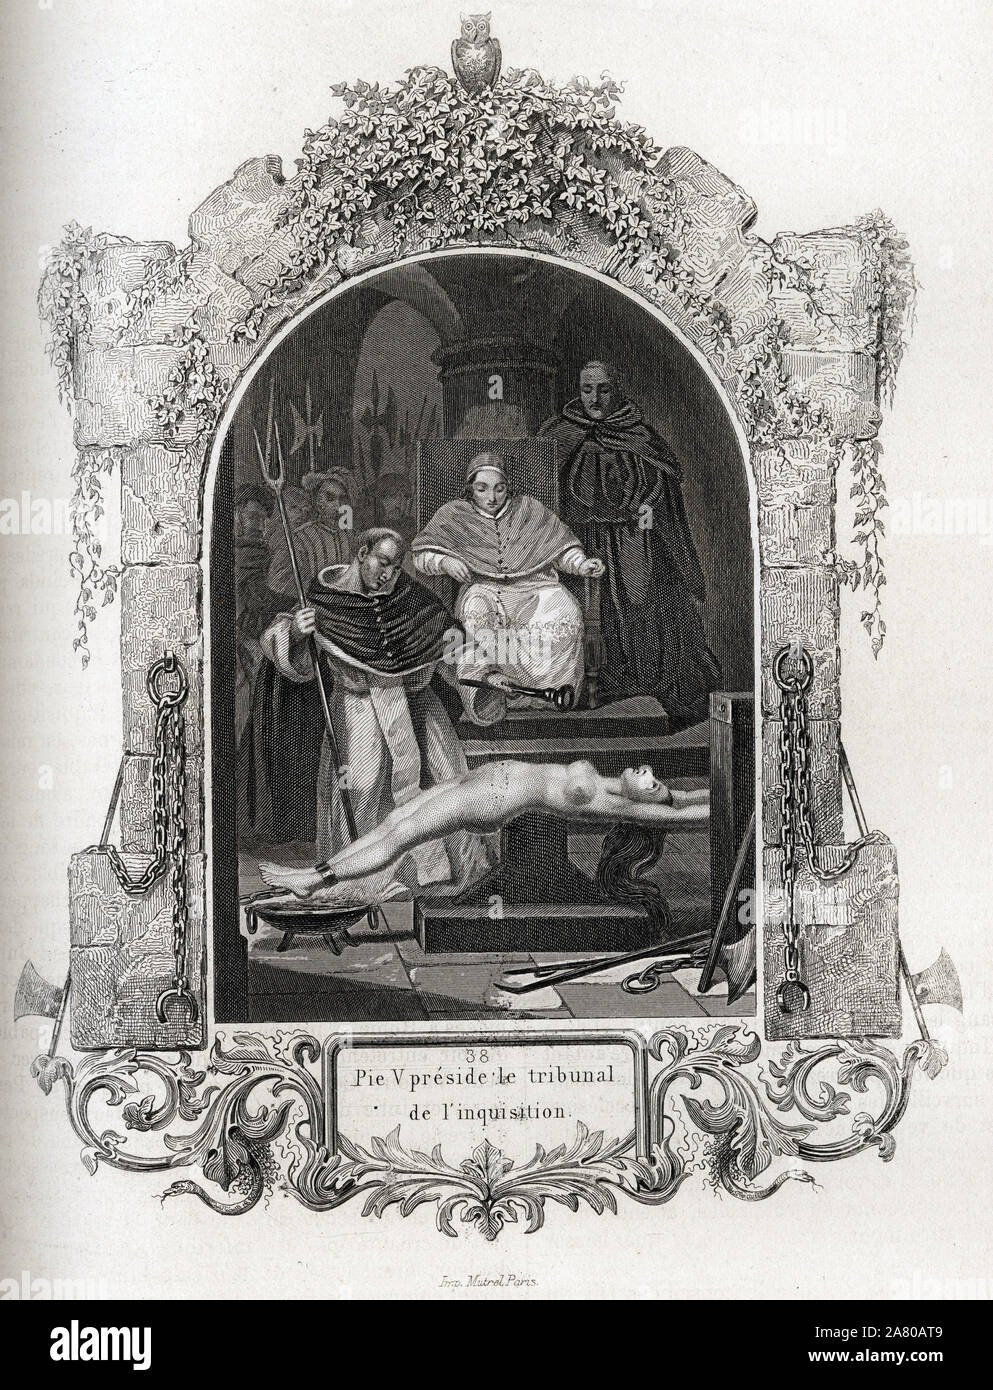 Pie V (Pius ou Pio) (1504-1572) preside le tribunal de l'inquisition. Gravure pour illustrer Histoire des papes par Maurice Lachatre (1814-1900), libr Stock Photo